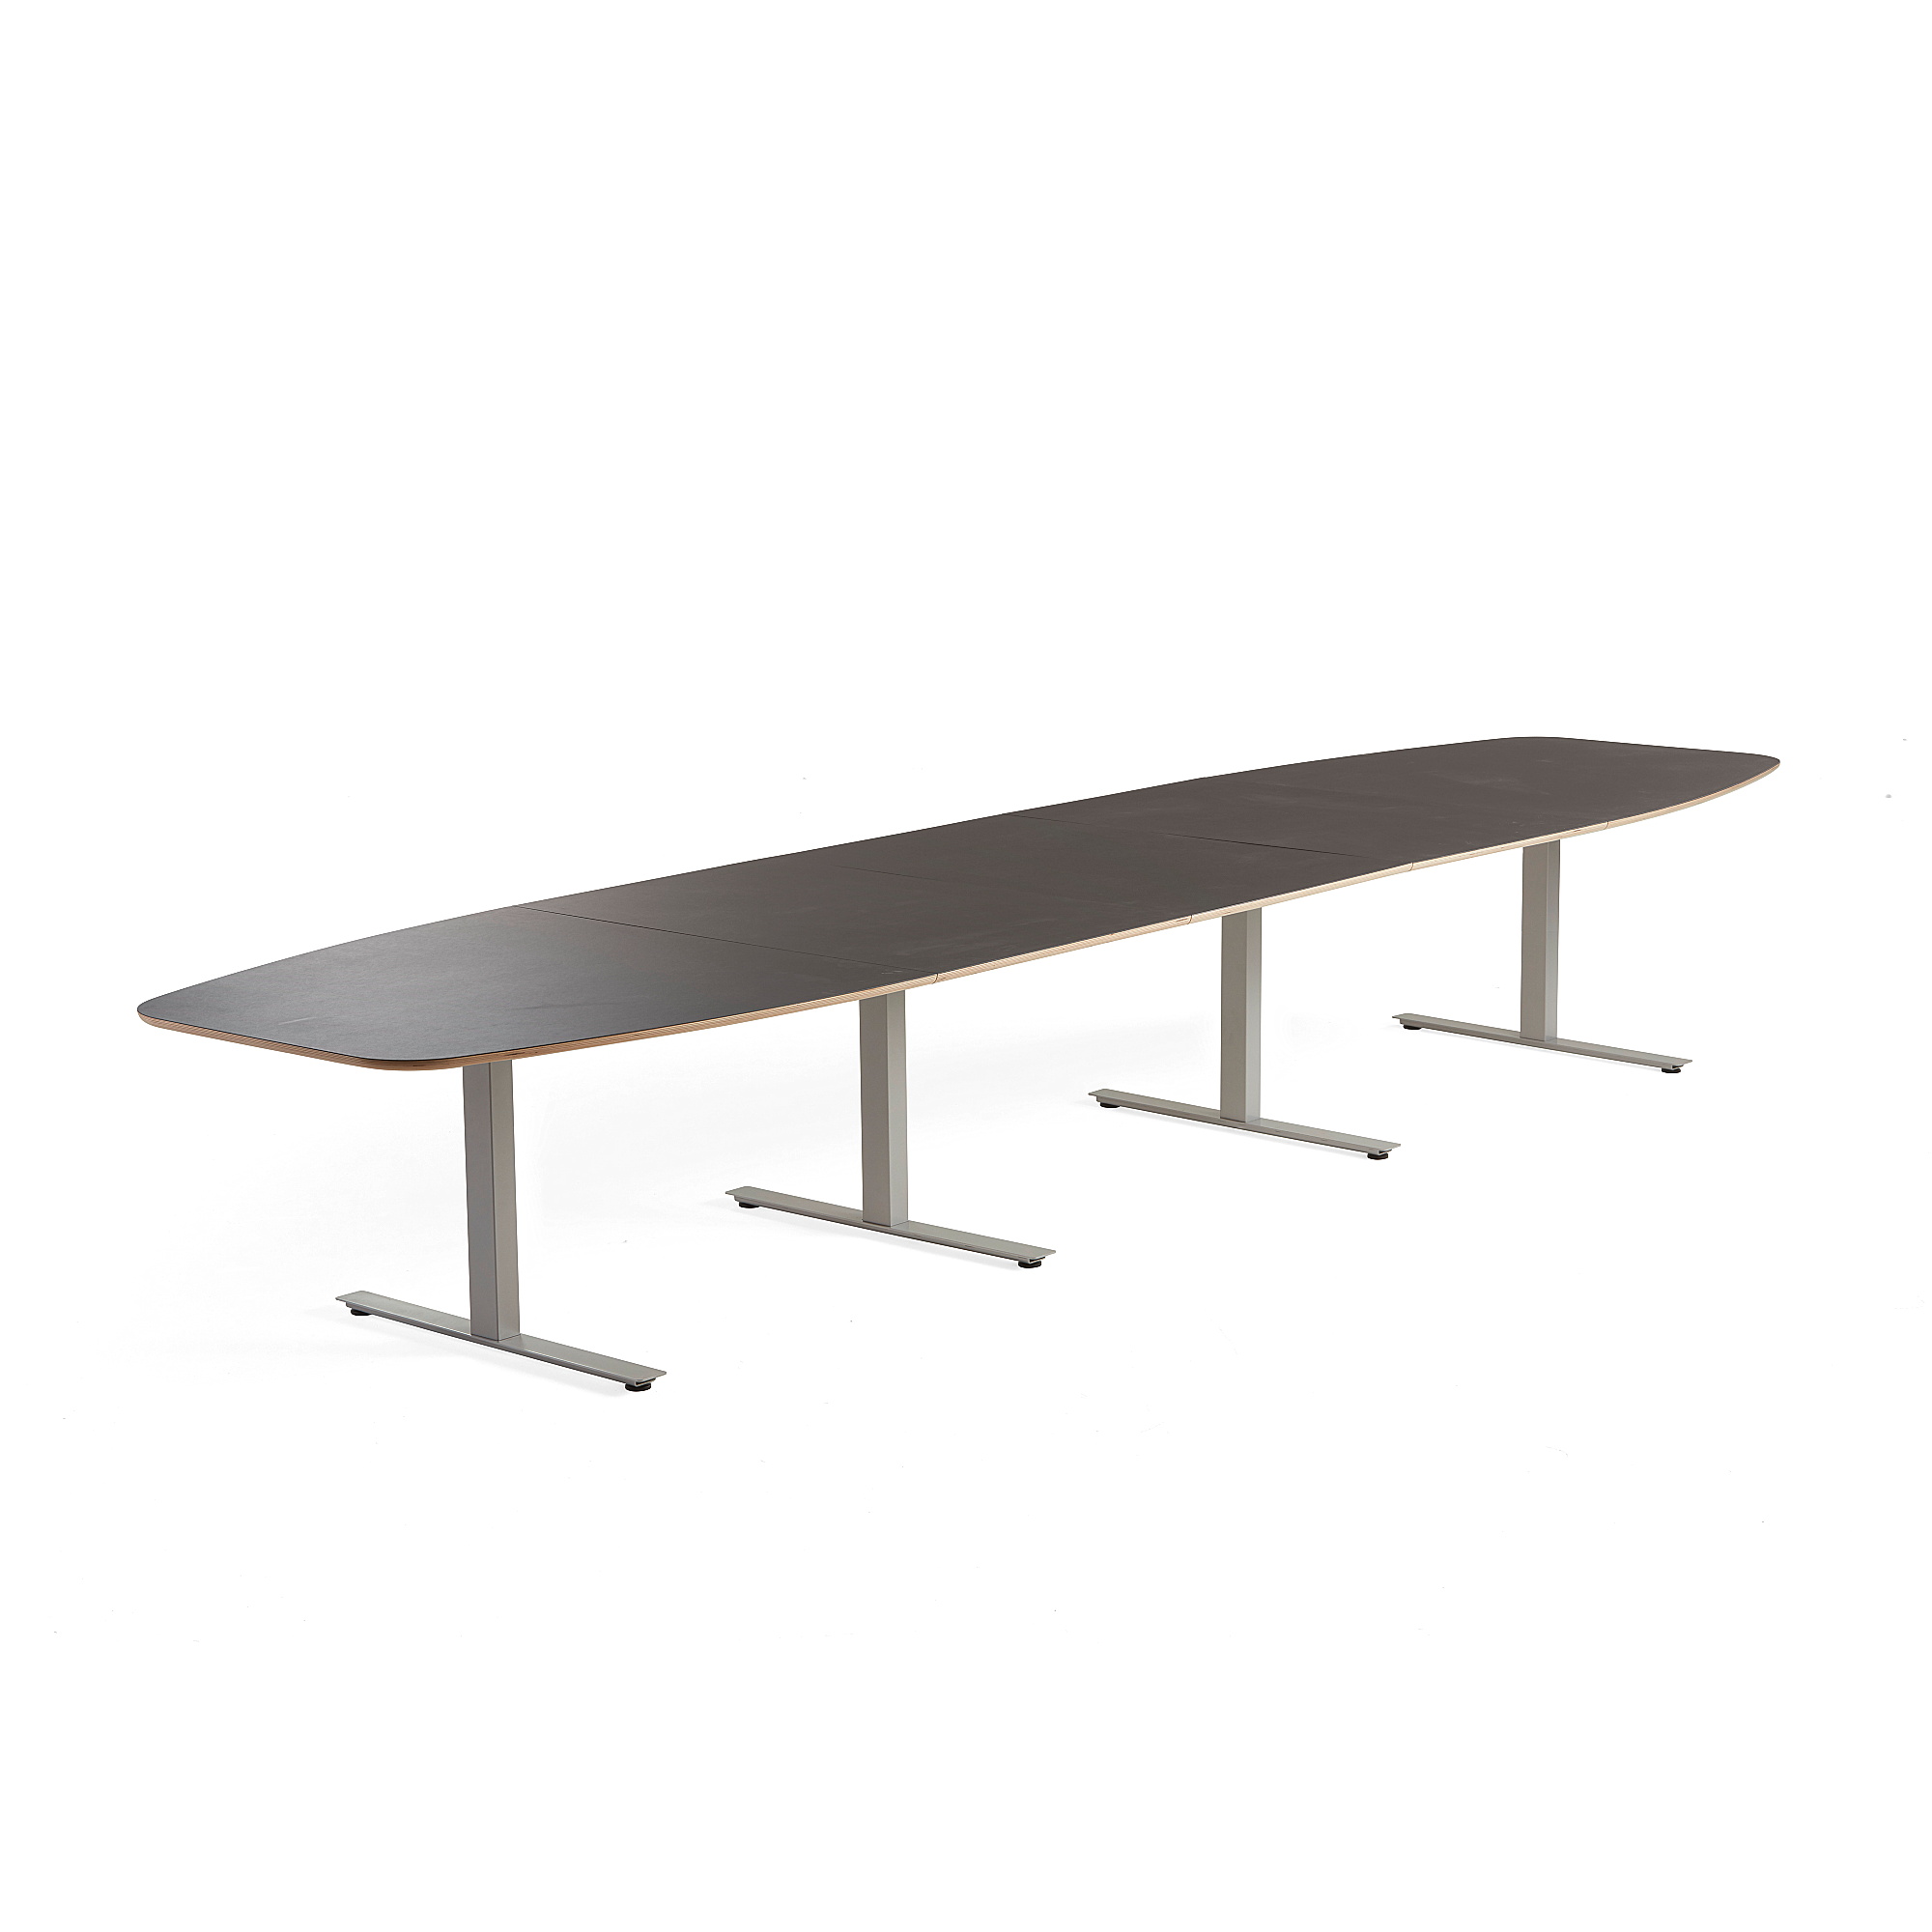 Rokovací stôl AUDREY, 4800x1200 mm, strieborný rám, šedohnedá doska